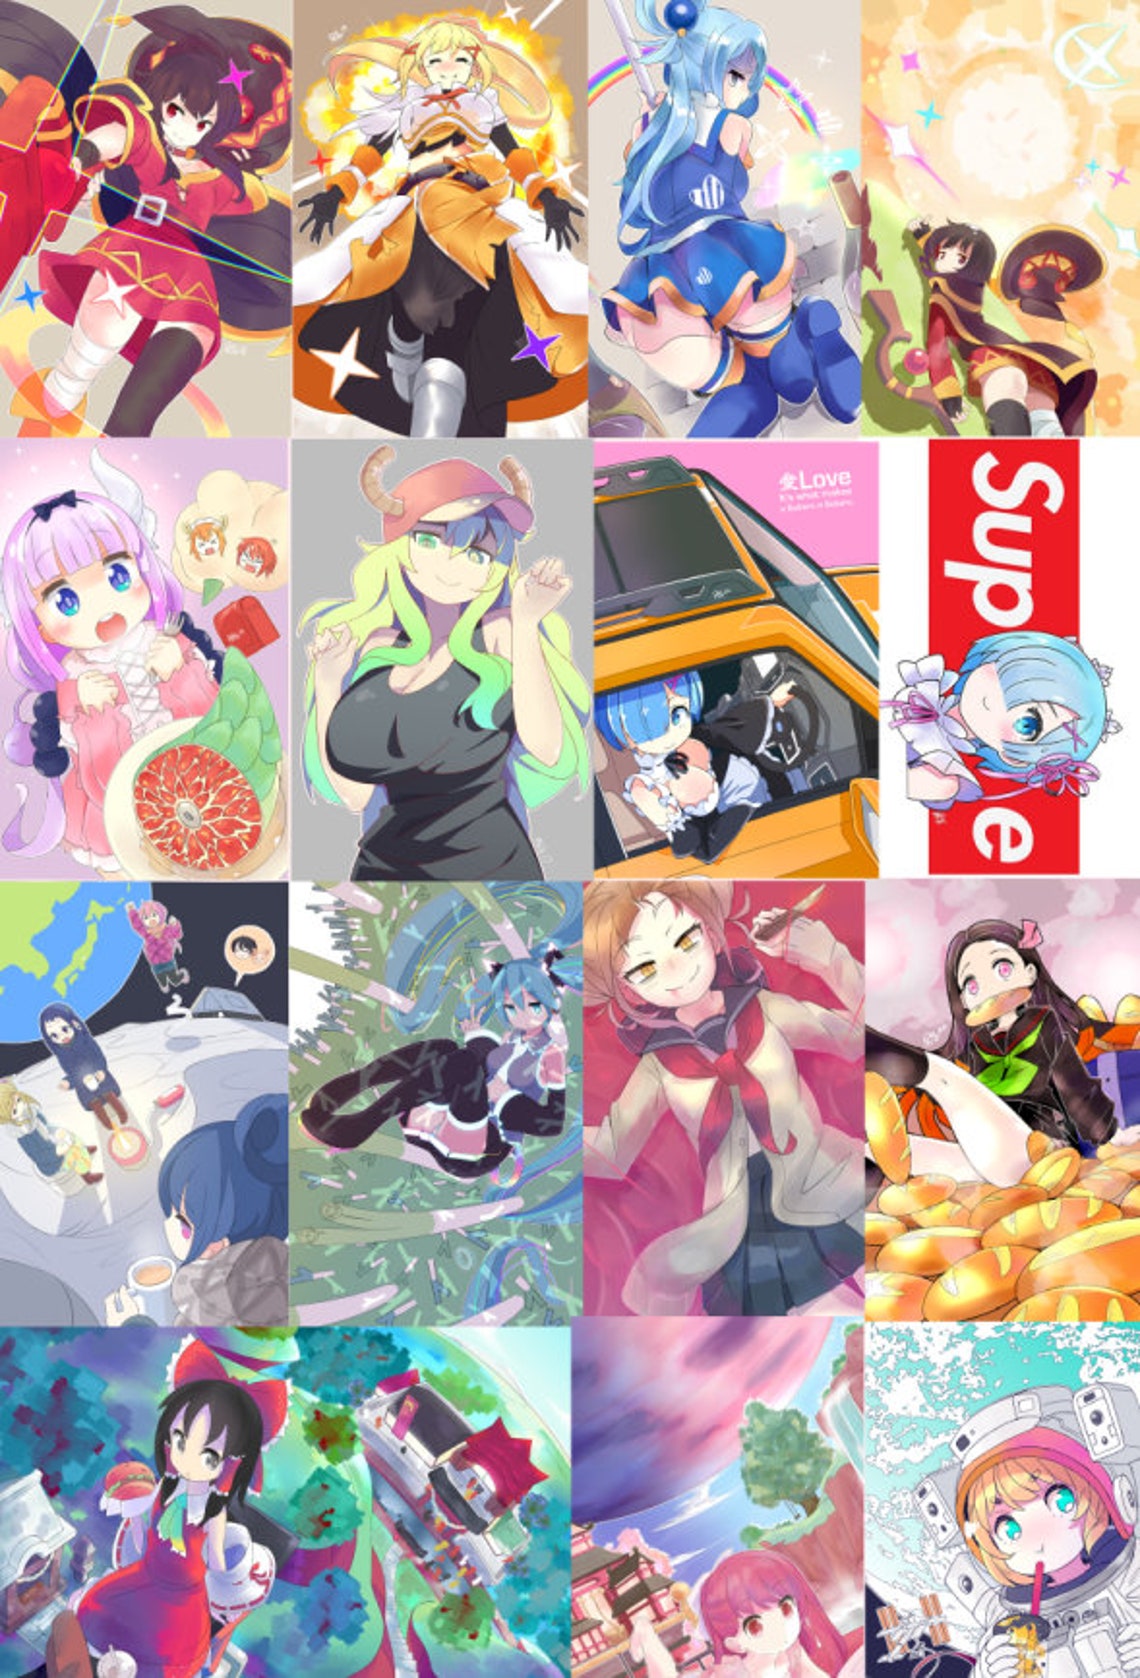 Konosuba Megumin Aqua Darkness Series Posters 11x17 Etsy